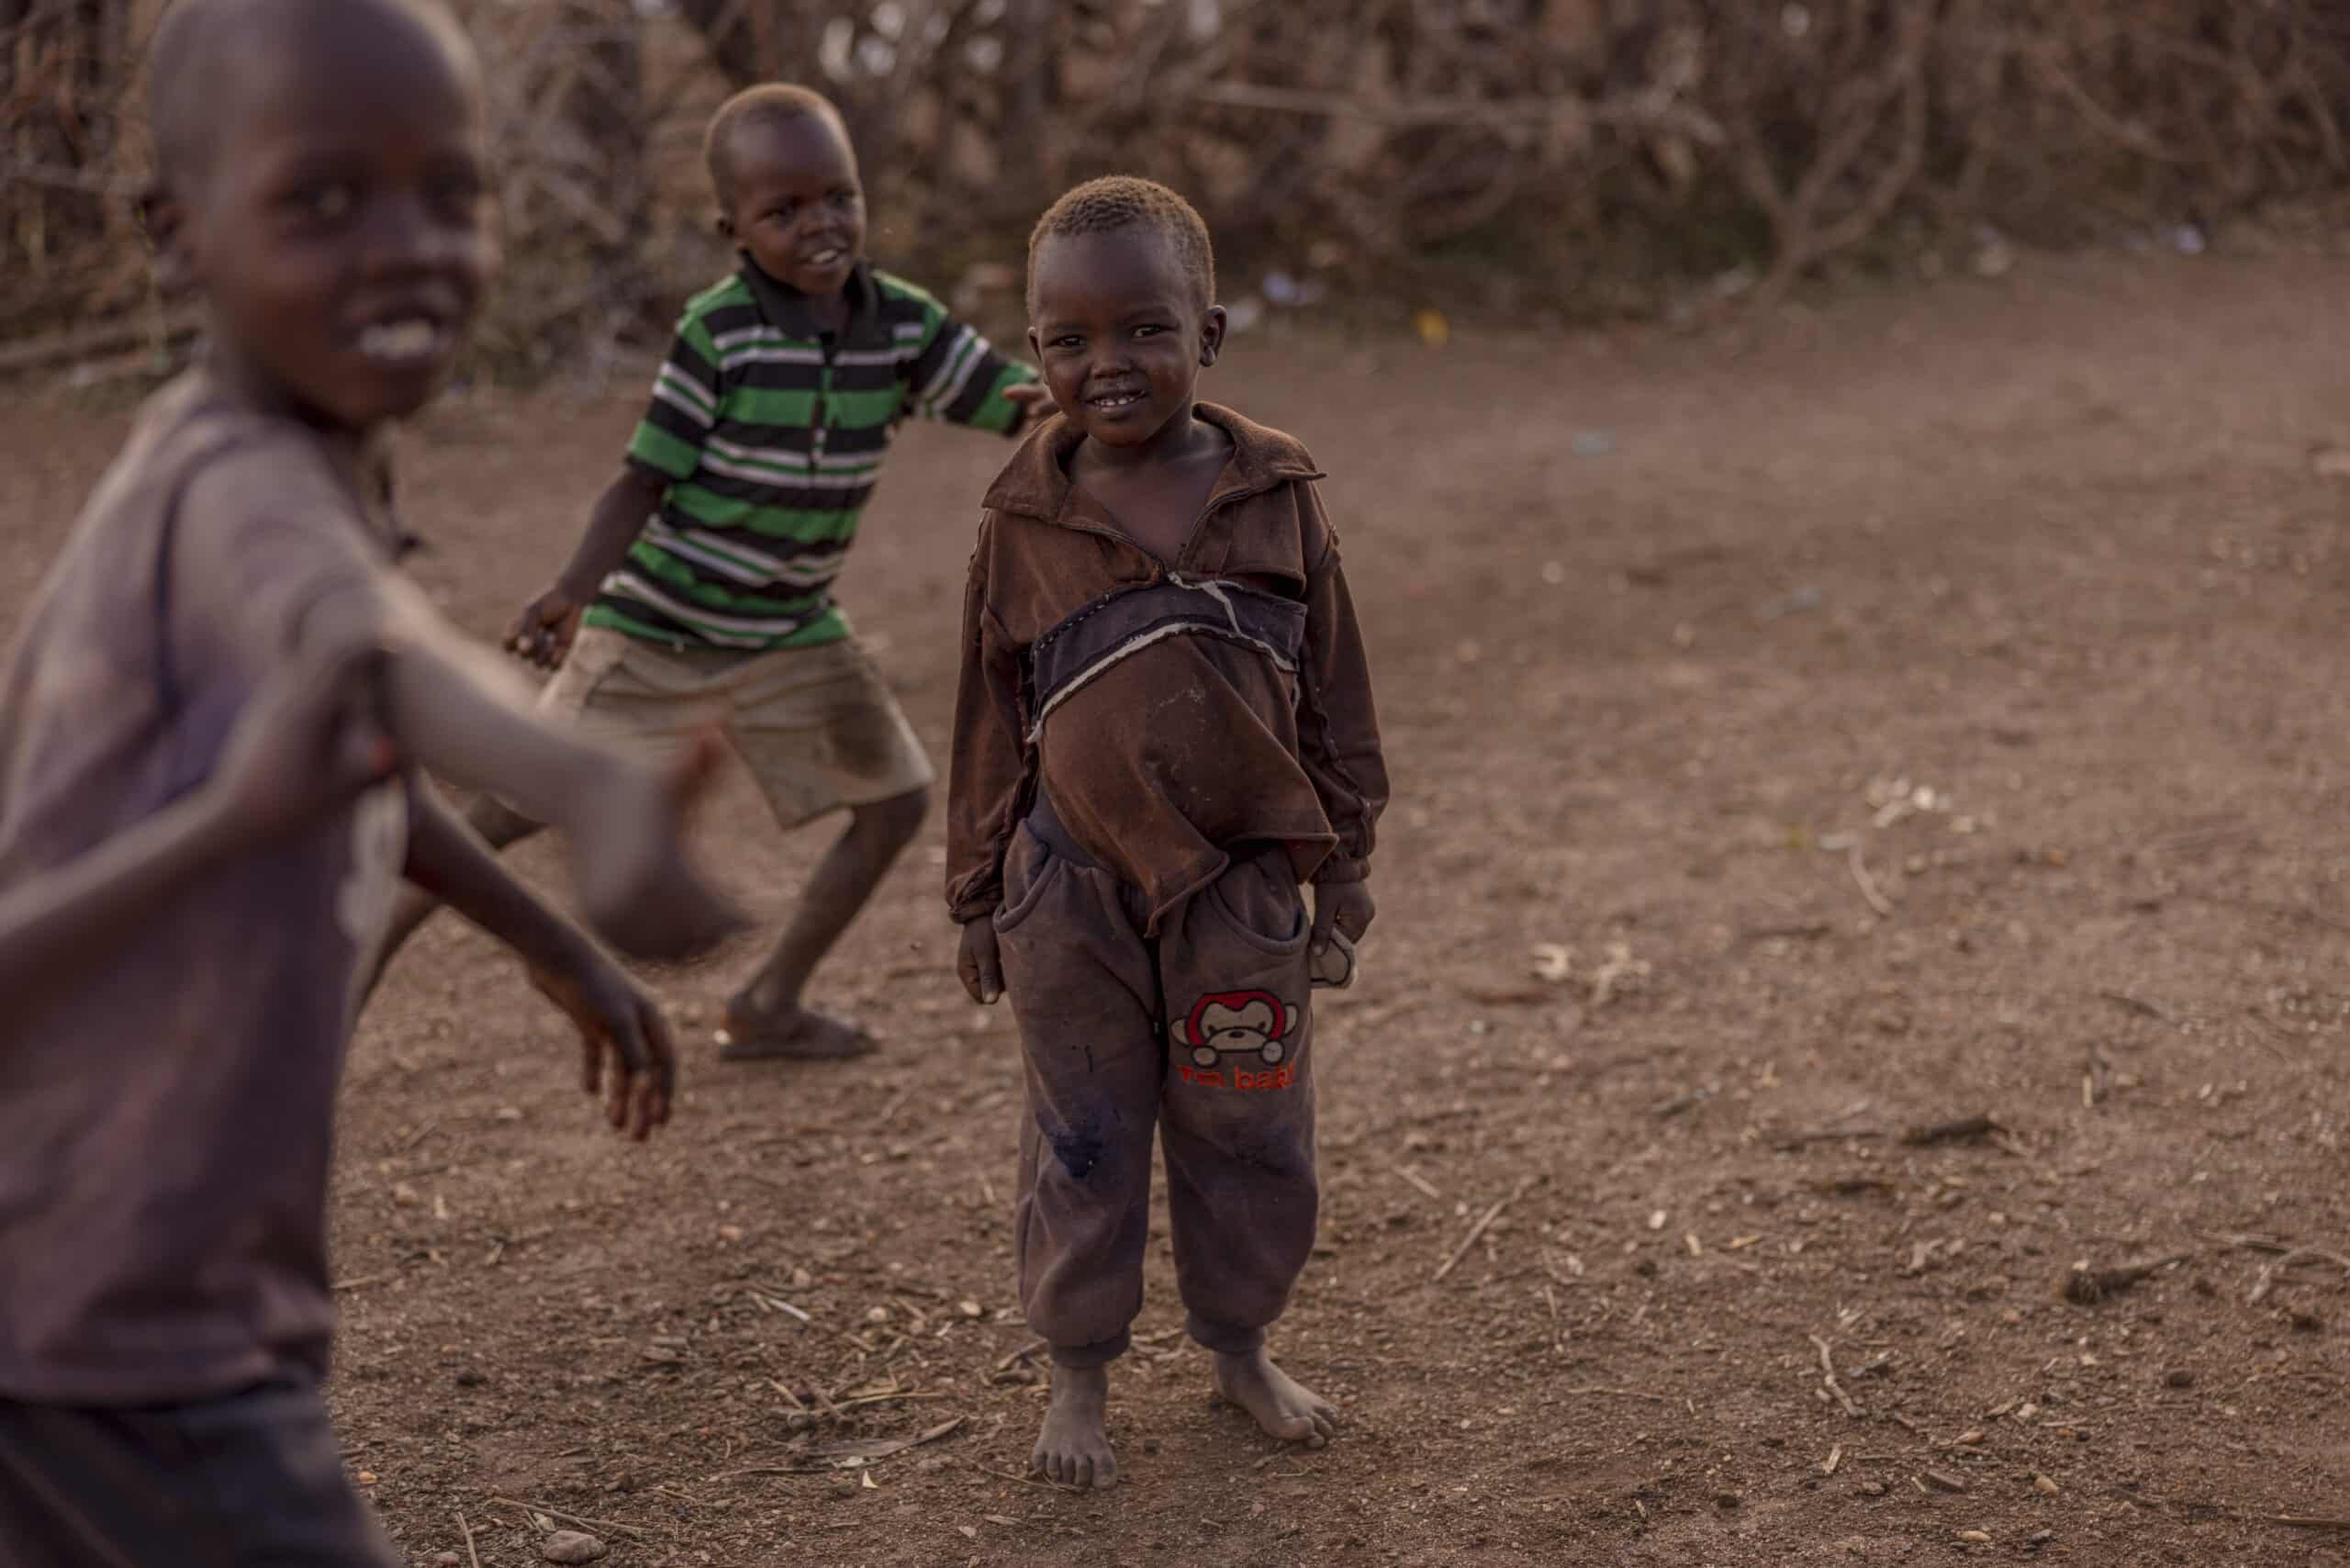 Drei kleine Kinder spielen in einer ländlichen Gegend. Ein Kind lächelt breit und rennt in Richtung Kamera, während die anderen im Hintergrund fröhlich dreinschauen. © Fotografie Tomas Rodriguez